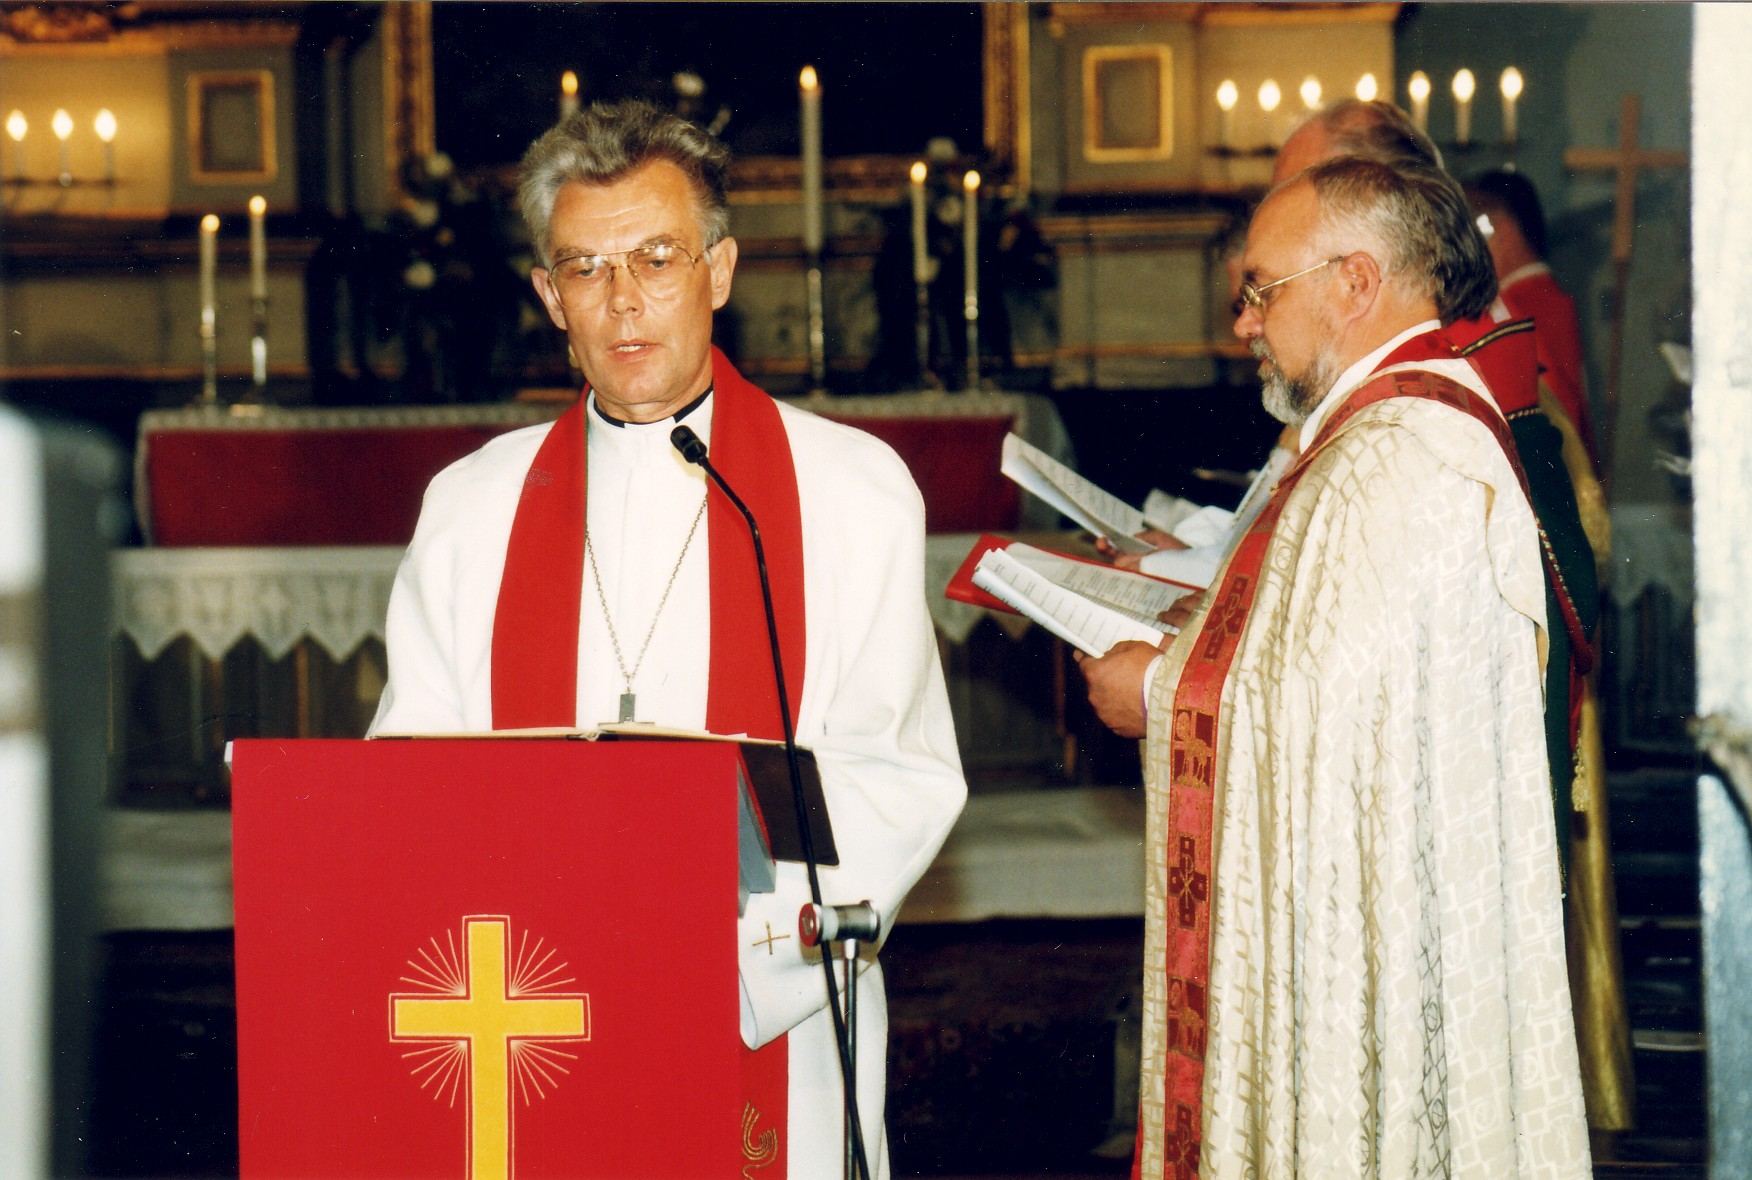 Toomas Paul Tallinna Piiskoplikus Toomkirikus 8. septembril 1996 ette kandmas Porvoo deklaratsiooni teksti.